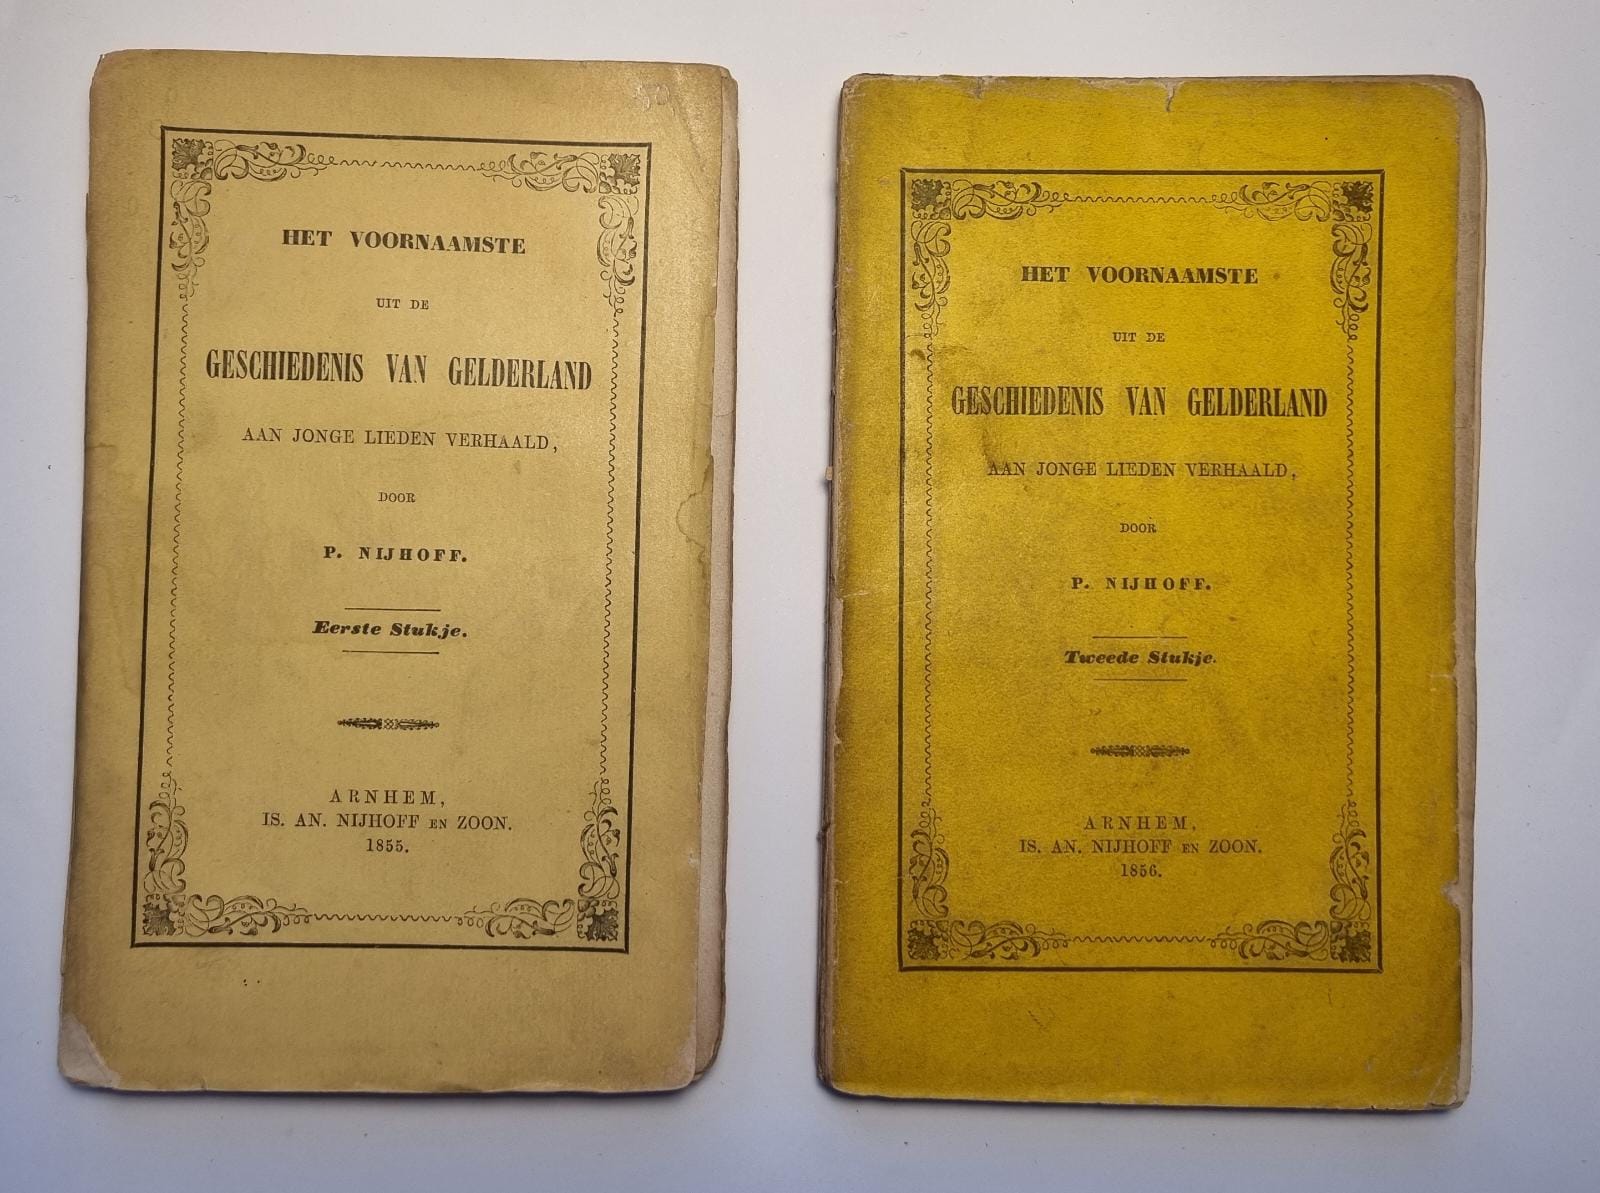 Het voornaamste uit de geschiedenis van Gelderland aan jonge lieden verhaald, Arnhem,1855-1856. (2 vols.)